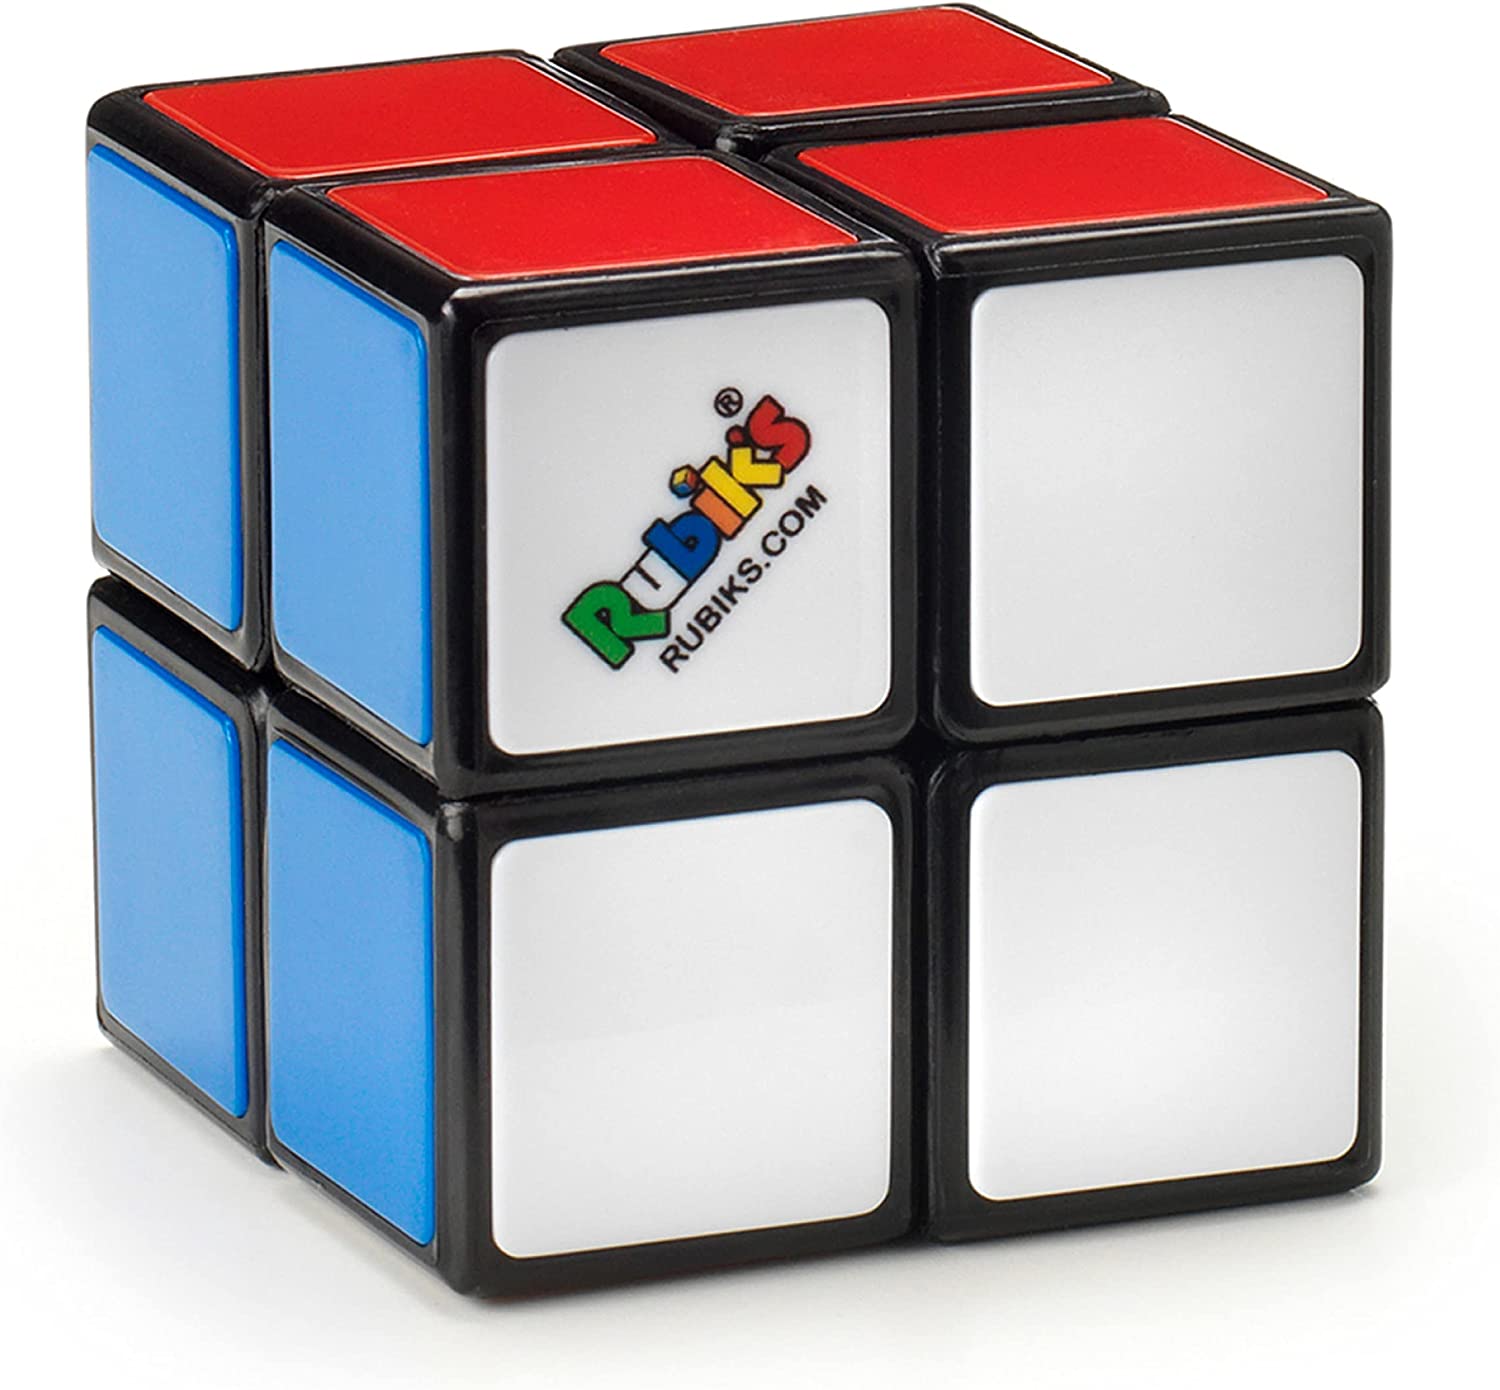 Rubiks Cube Mini 2X2